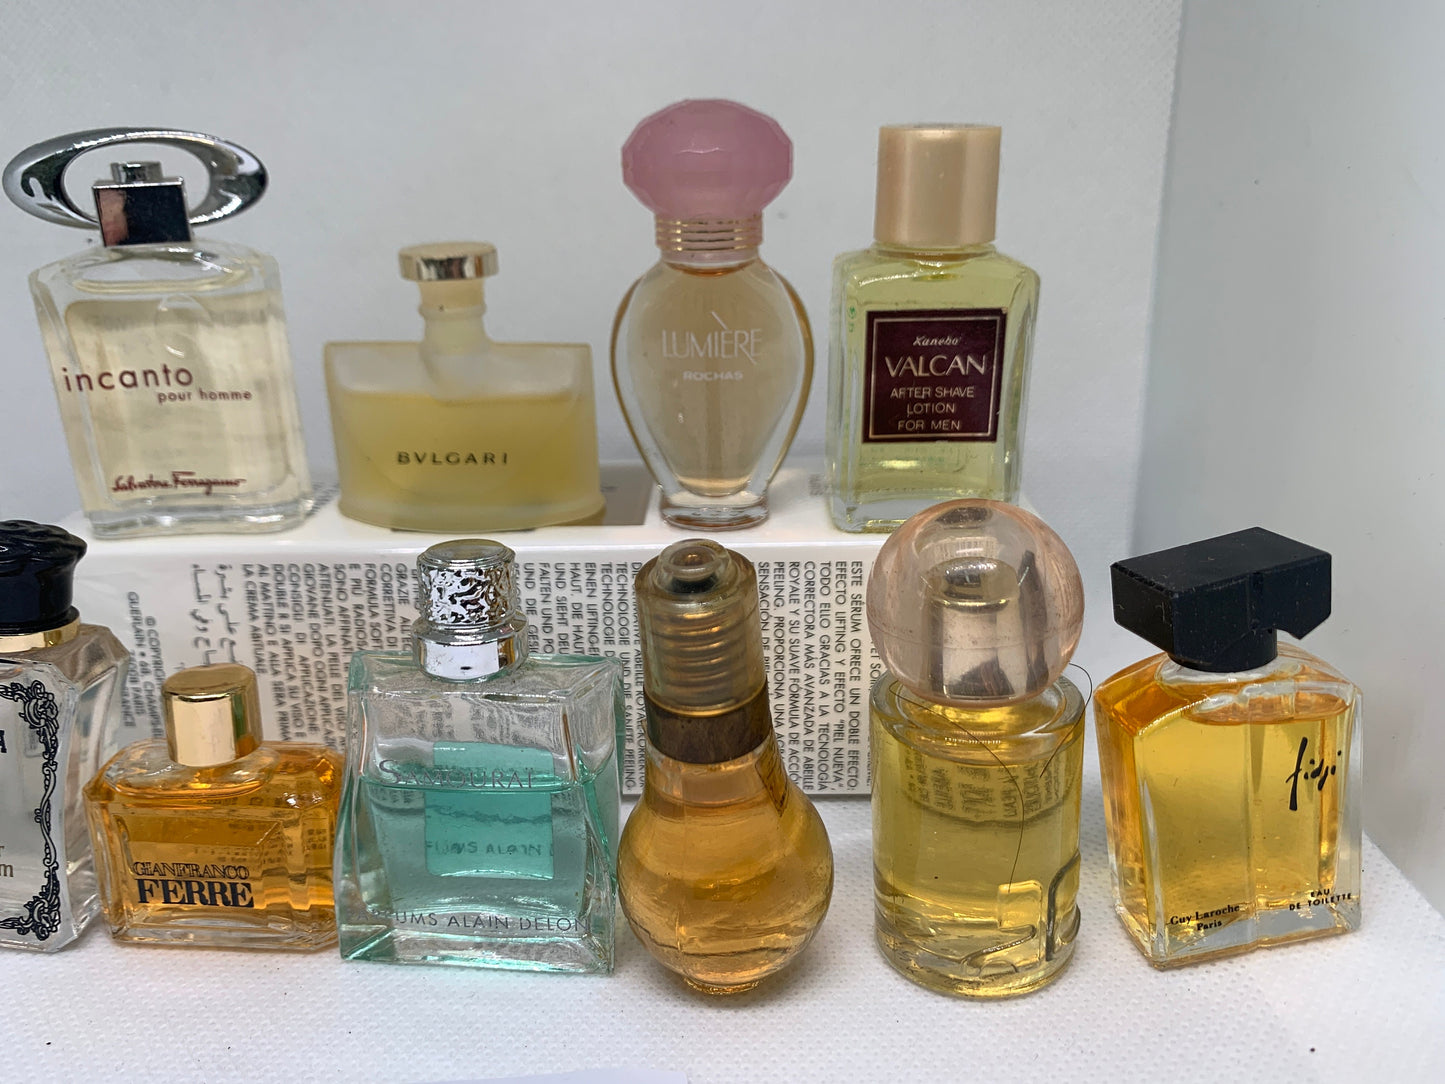 Mini Perfume EDT  11 bottles FERRE Anna sui Bvlgari set - 1503A